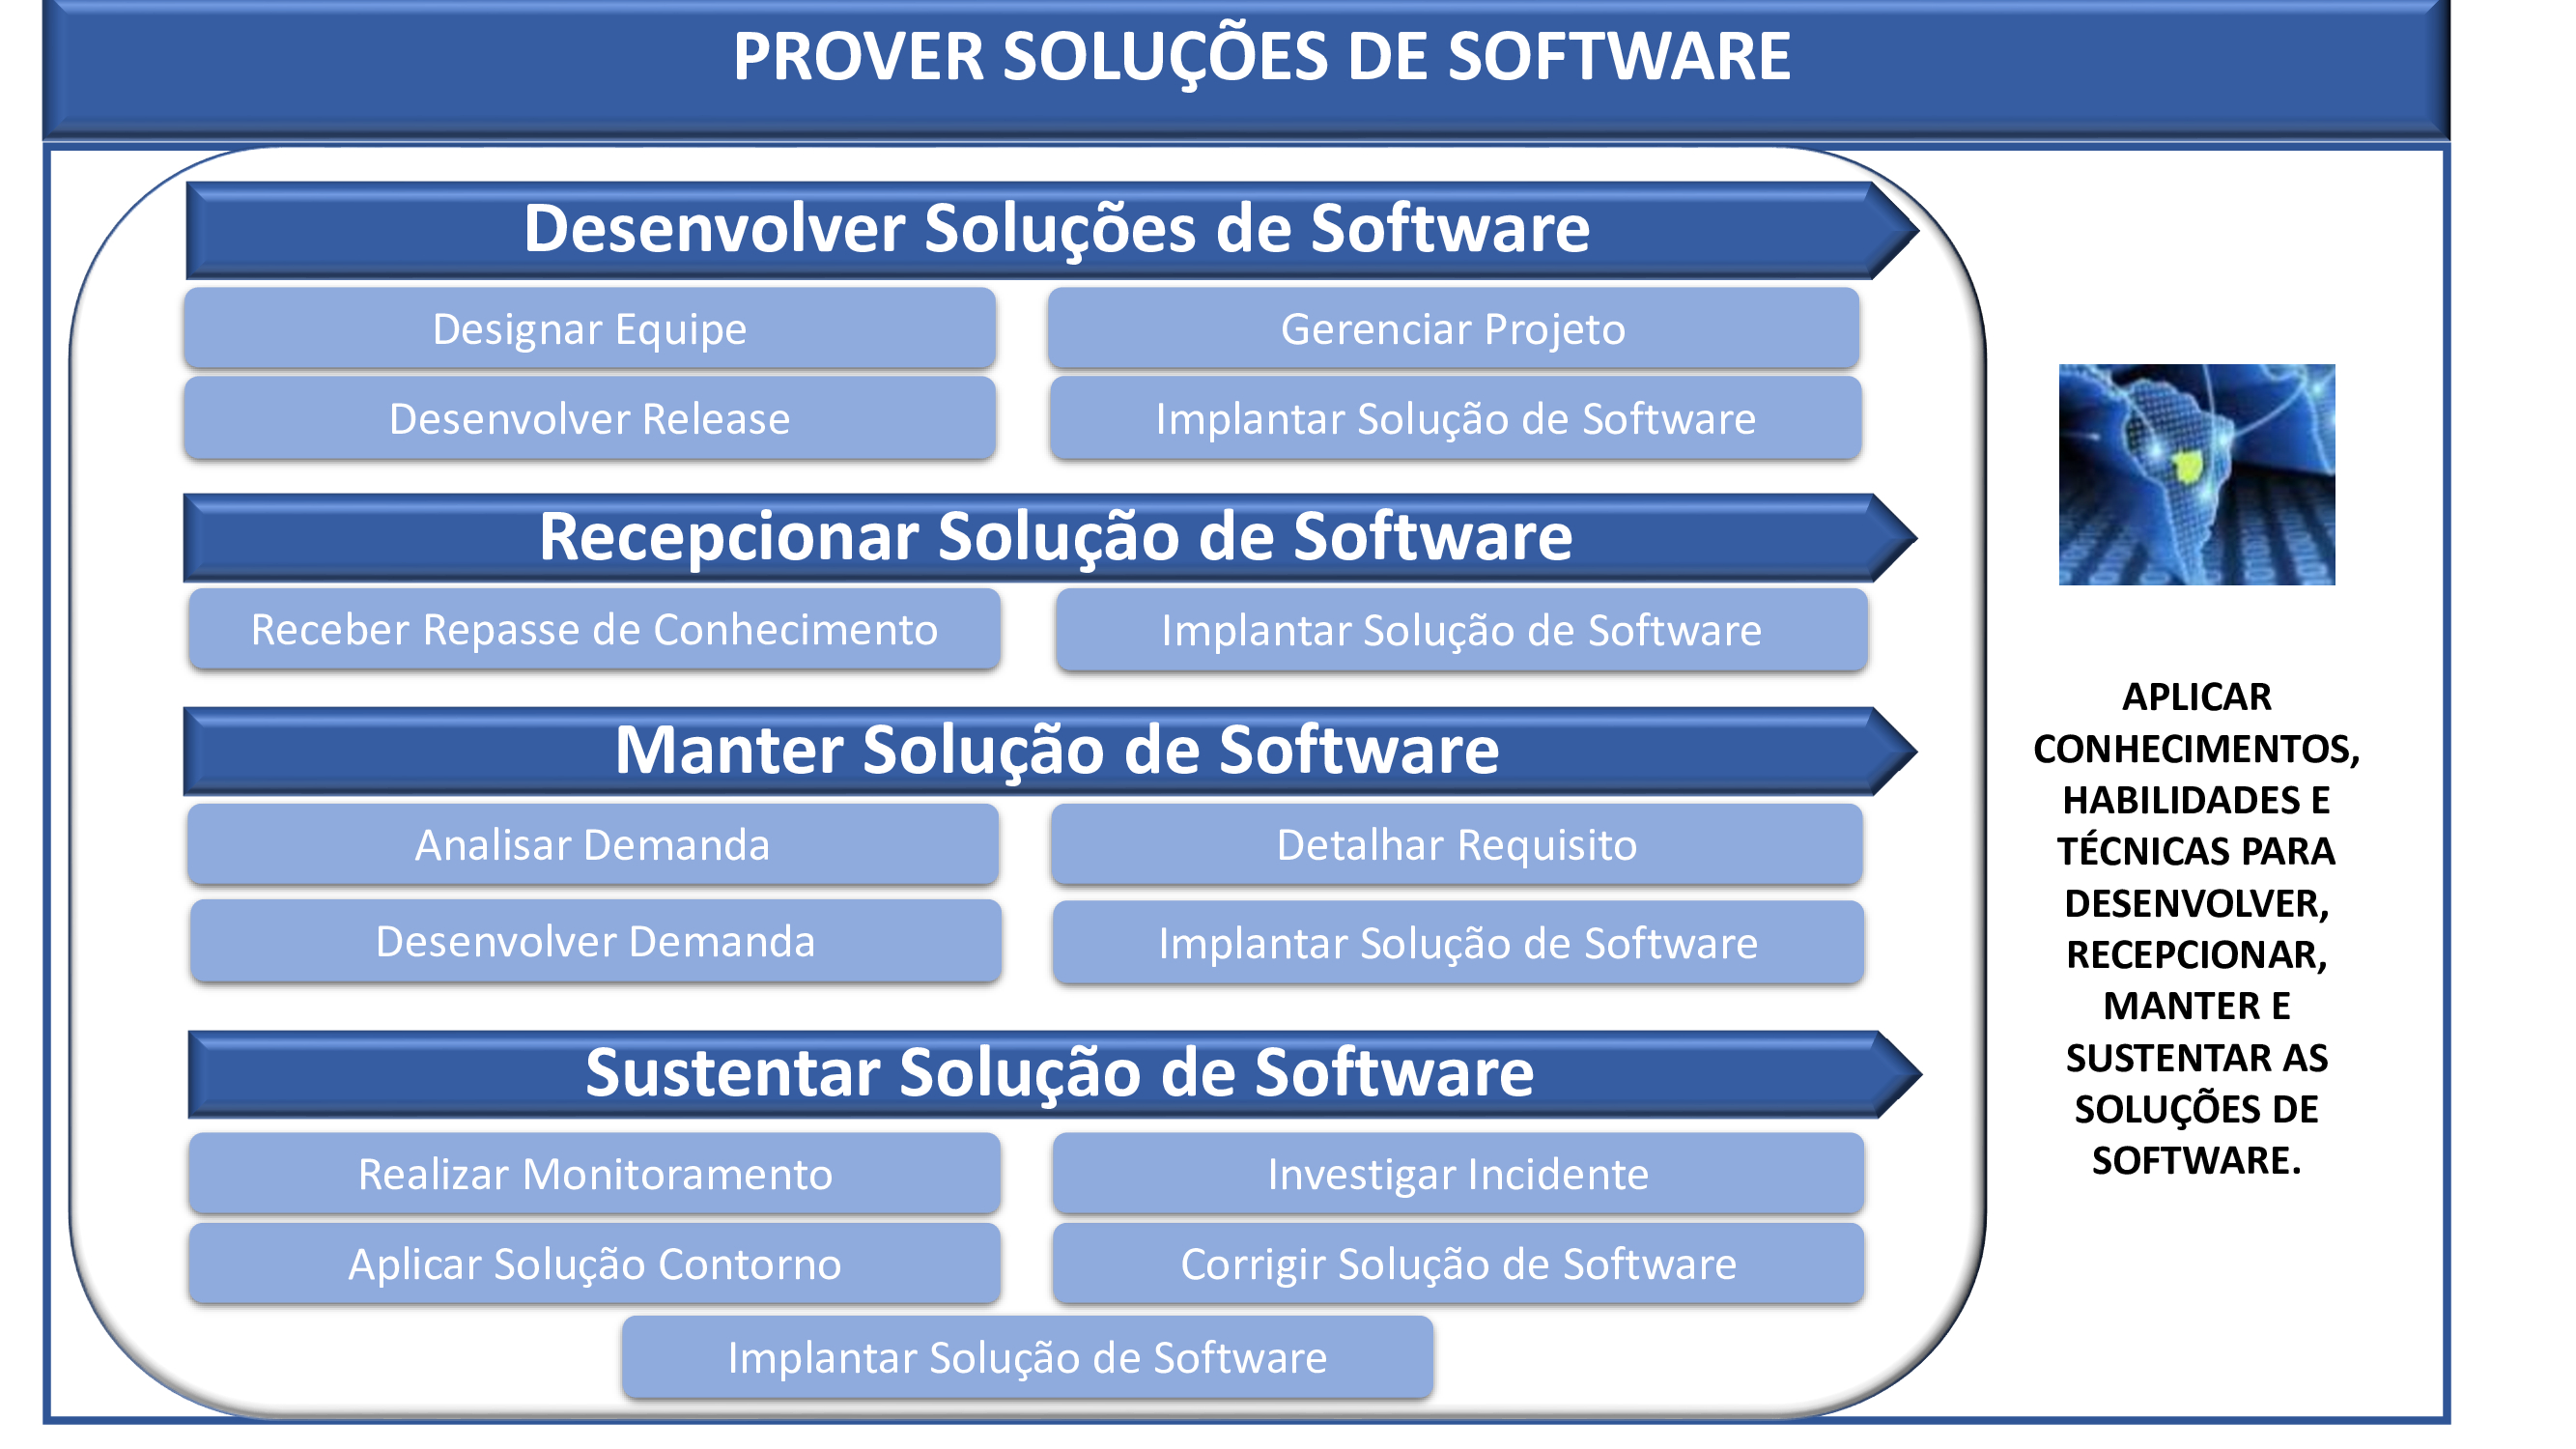 Sistema Prover Soluções de Software